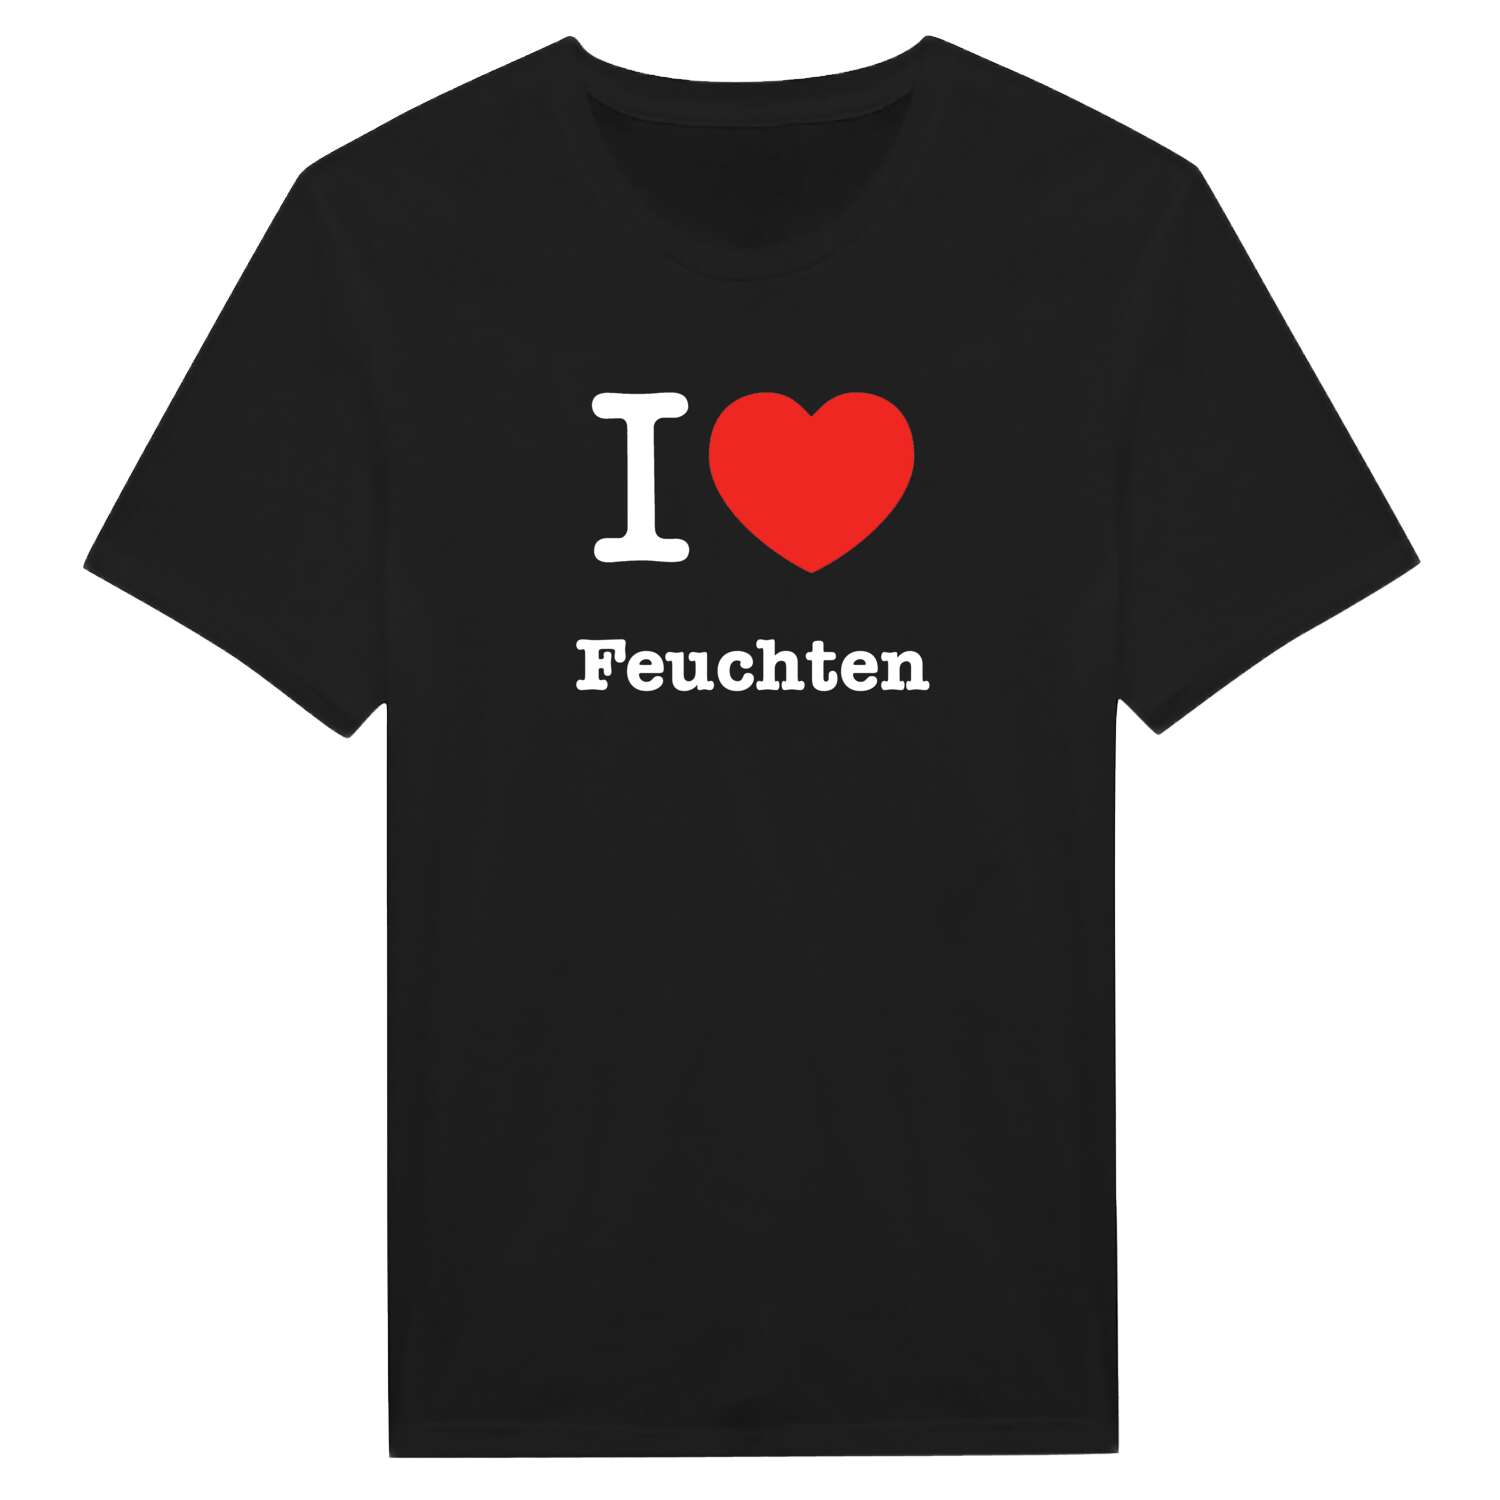 Feuchten T-Shirt »I love«